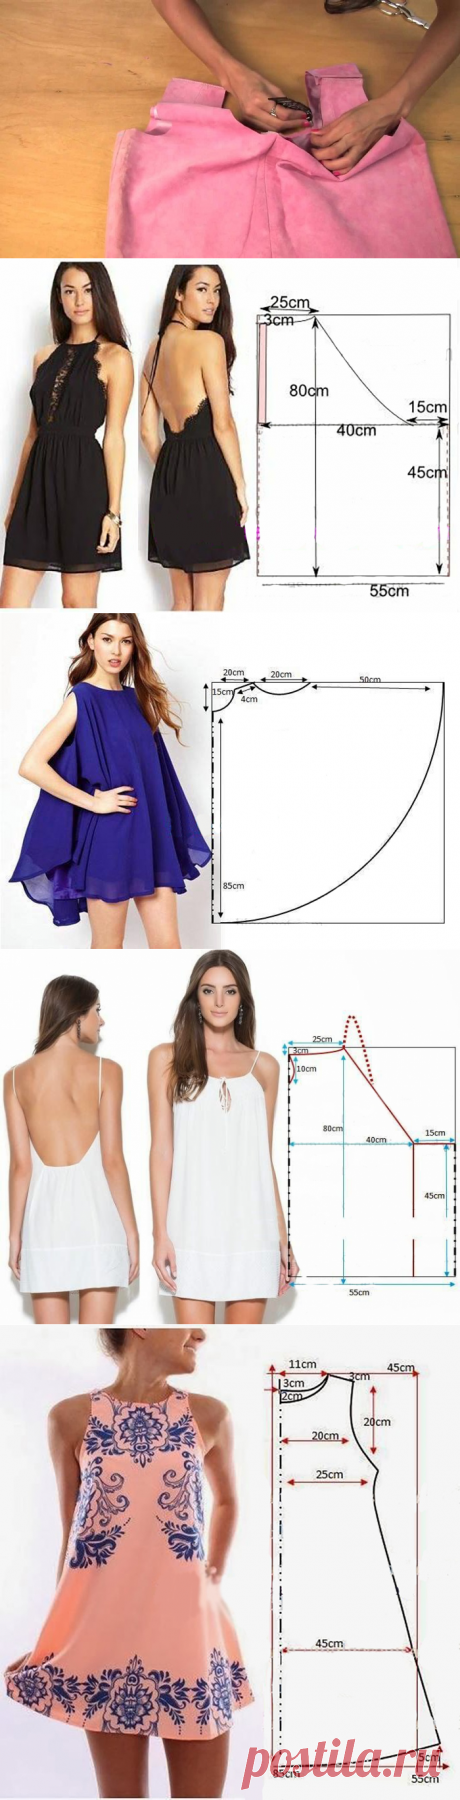 Модели платьев с выкройками